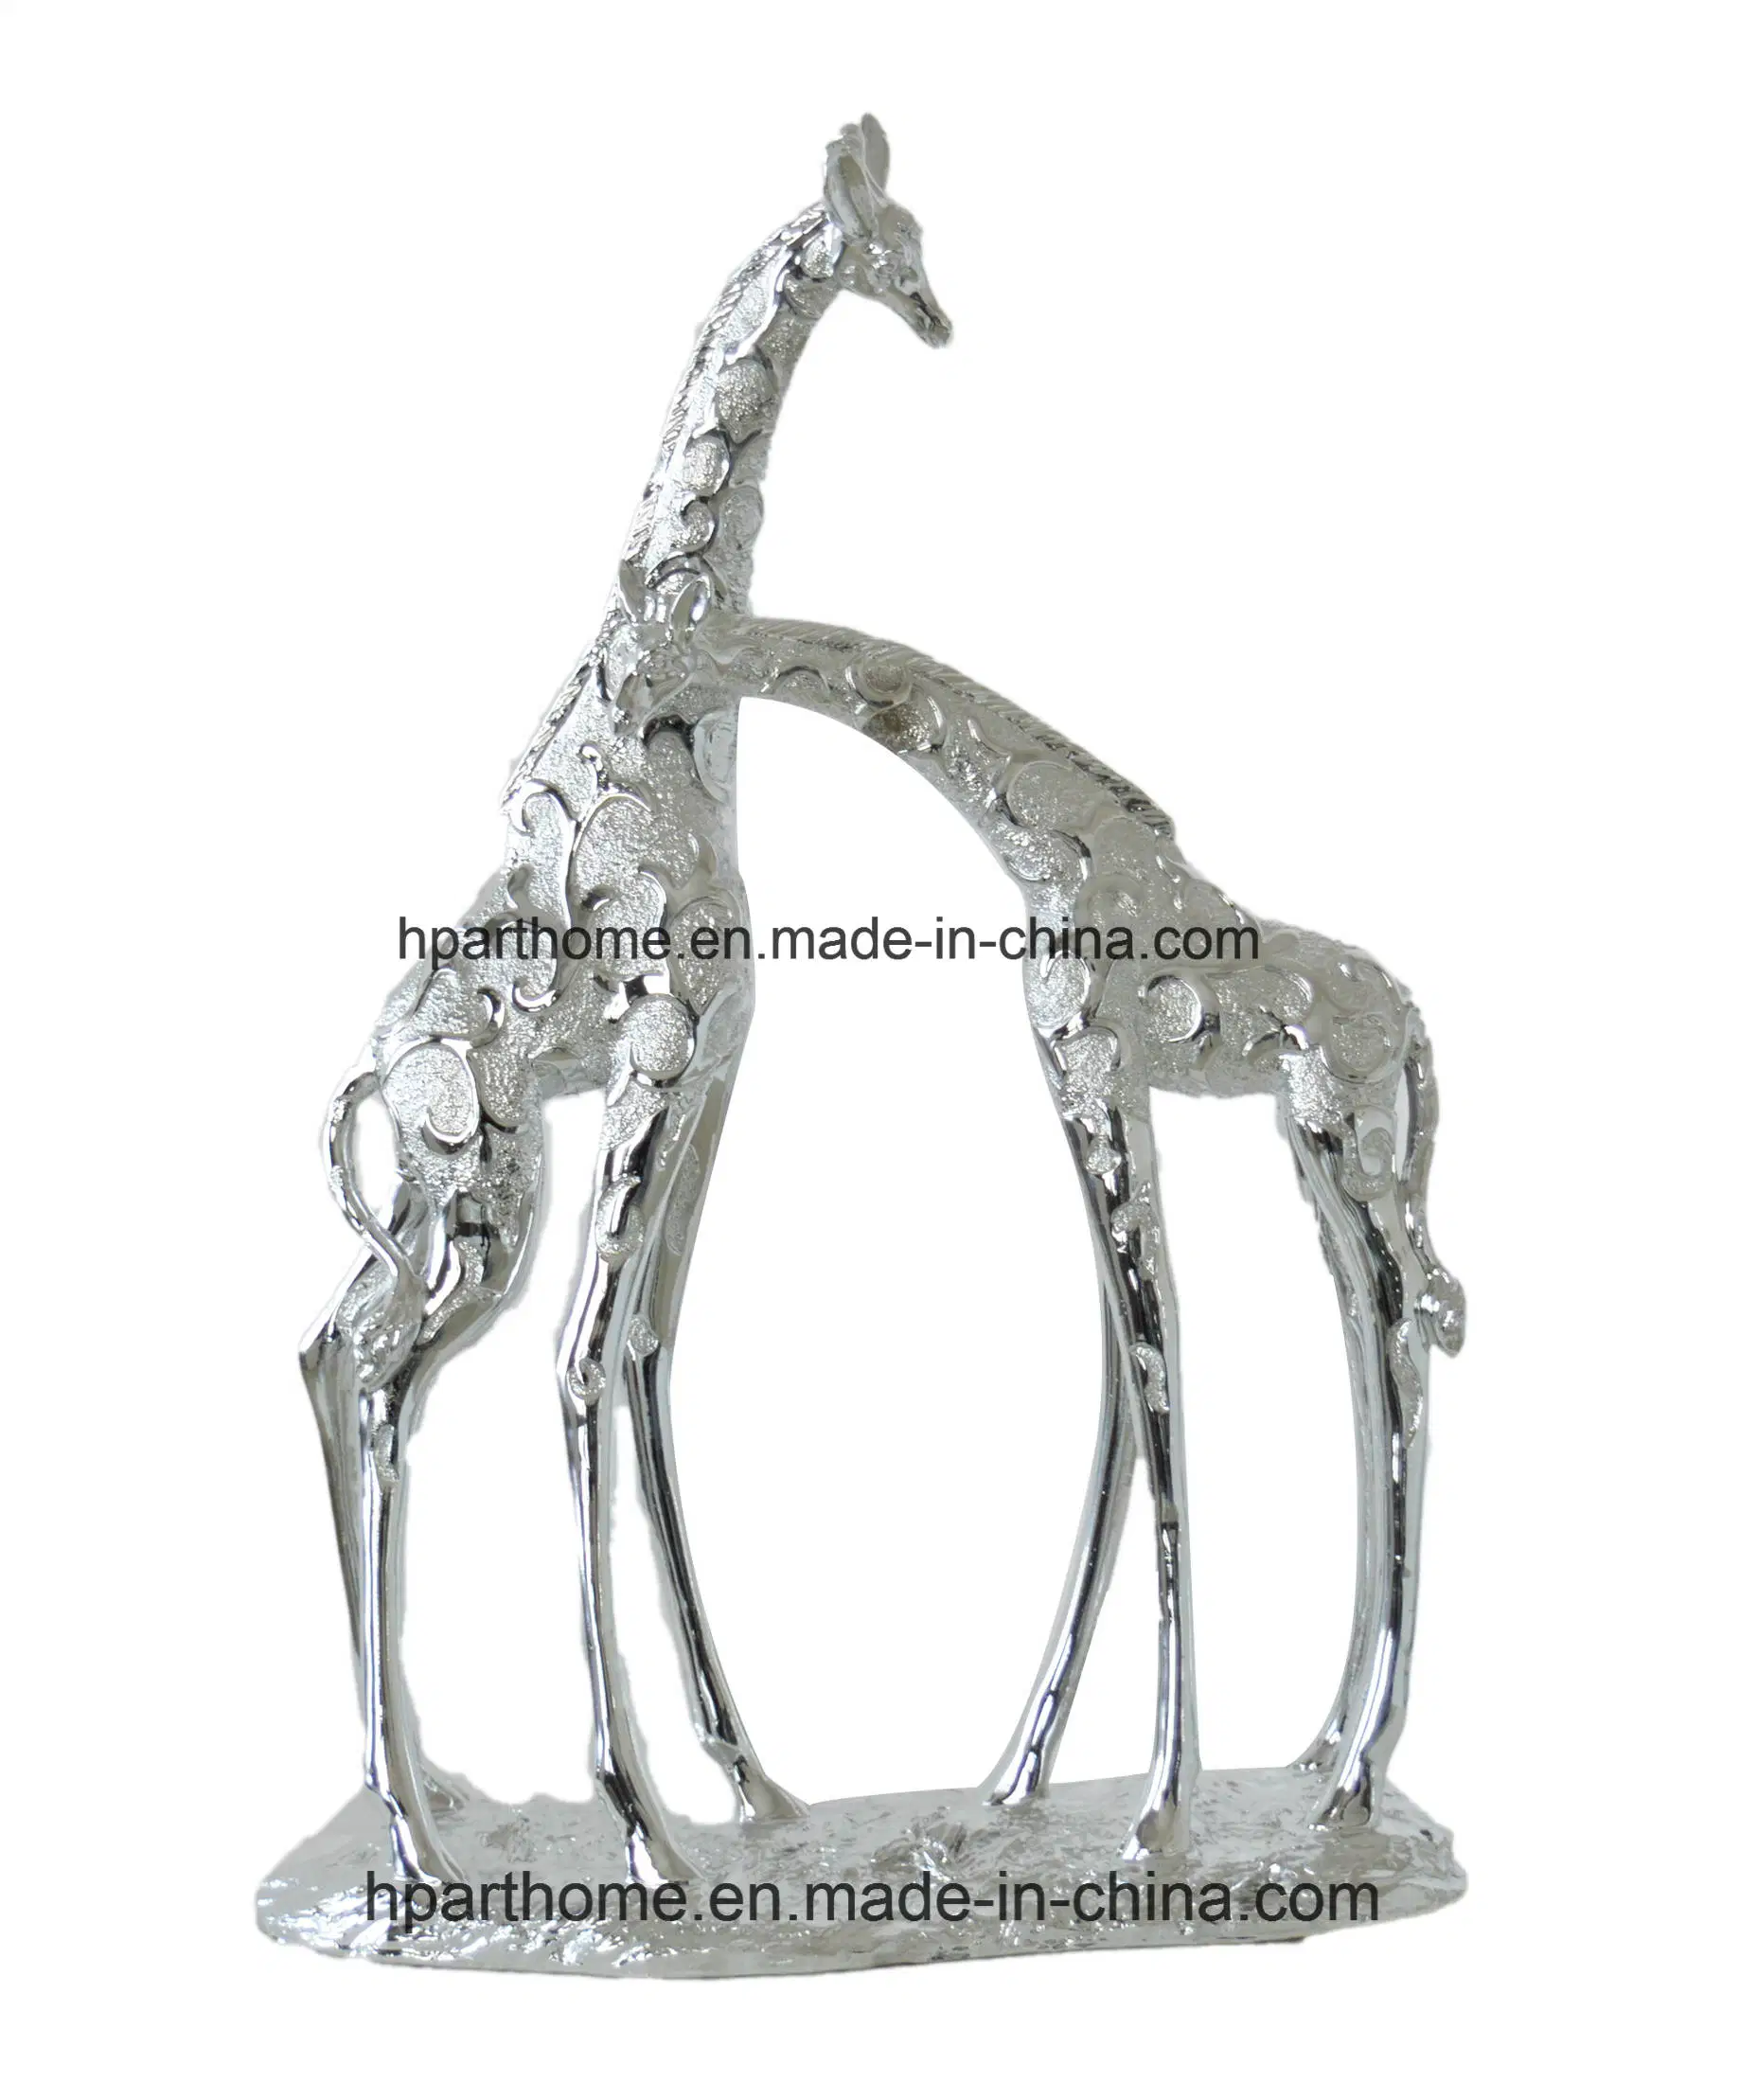 Lovely Animal Resin Giraffe Garden Statue Polyresin Figurine Christmas Gift